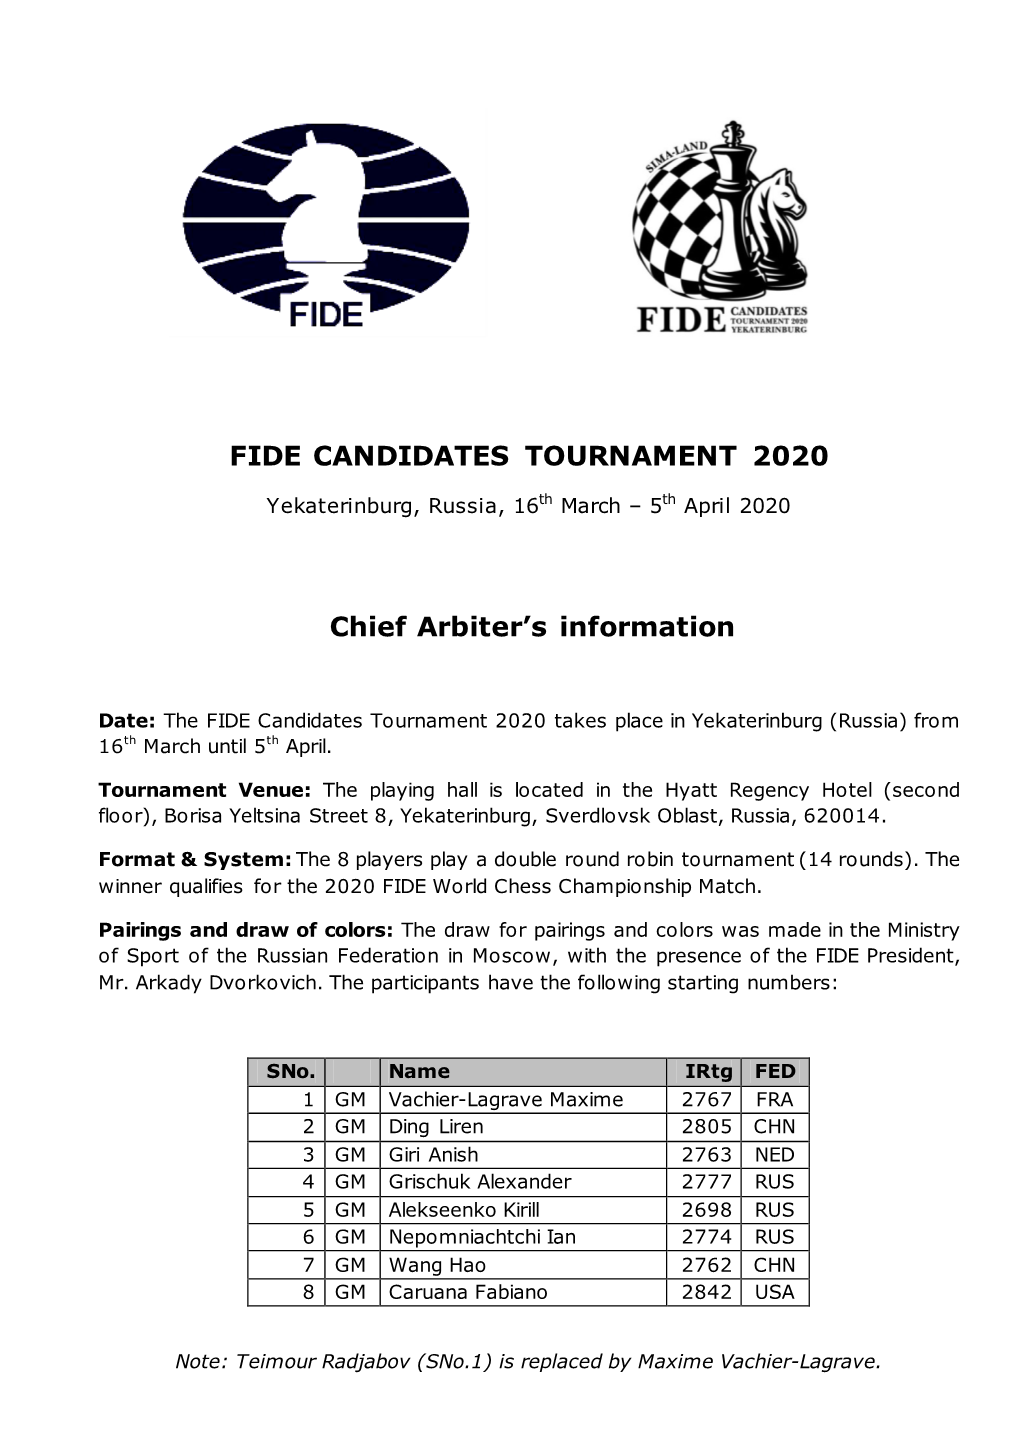 FIDE CANDIDATES TOURNAMENT 2020 Chief Arbiter's Information